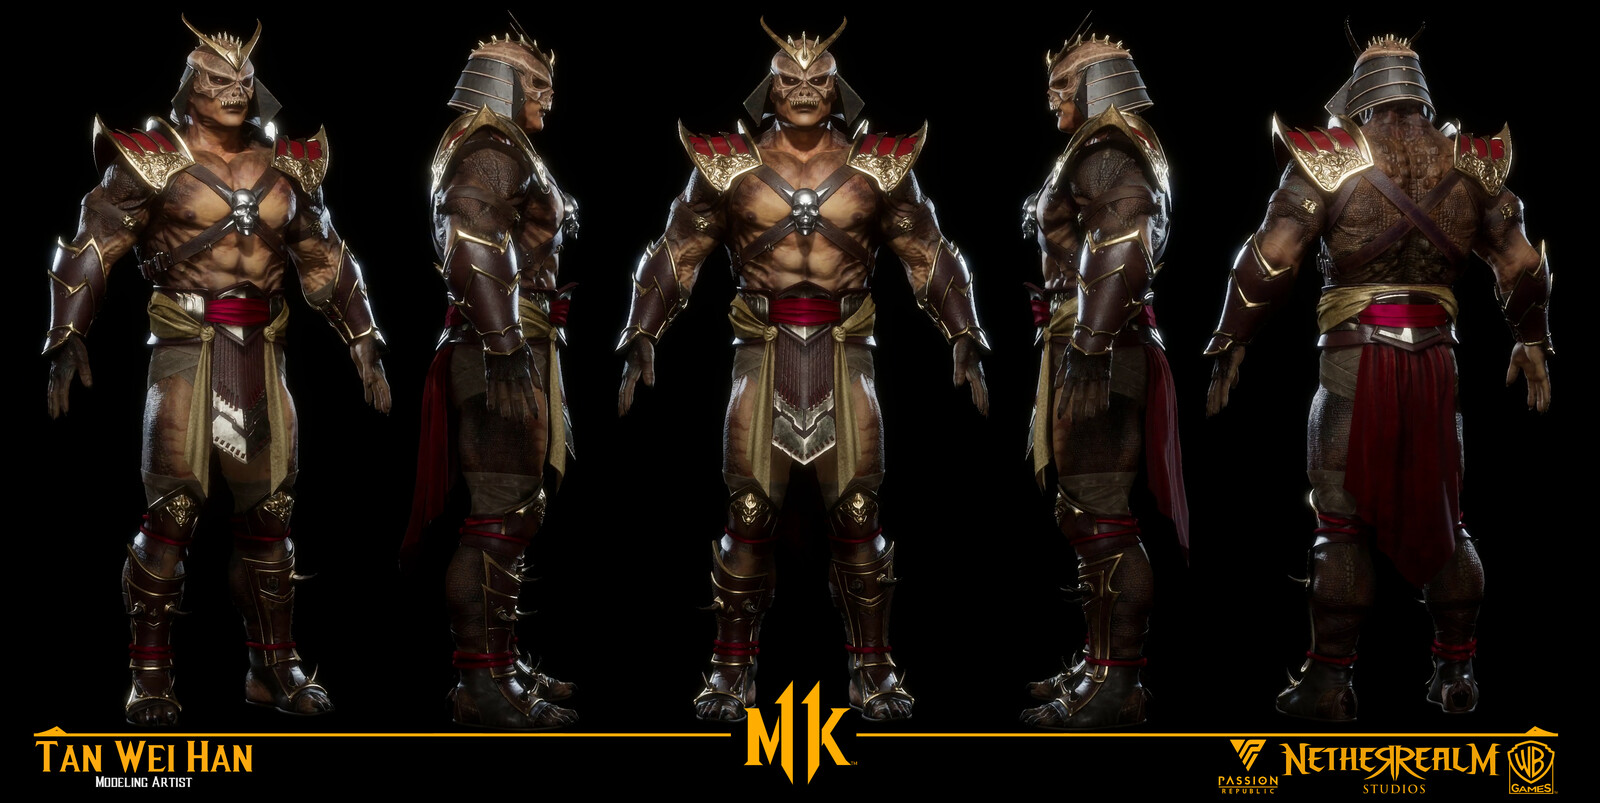 ArtStation - Mortal Kombat - Shao Kahn